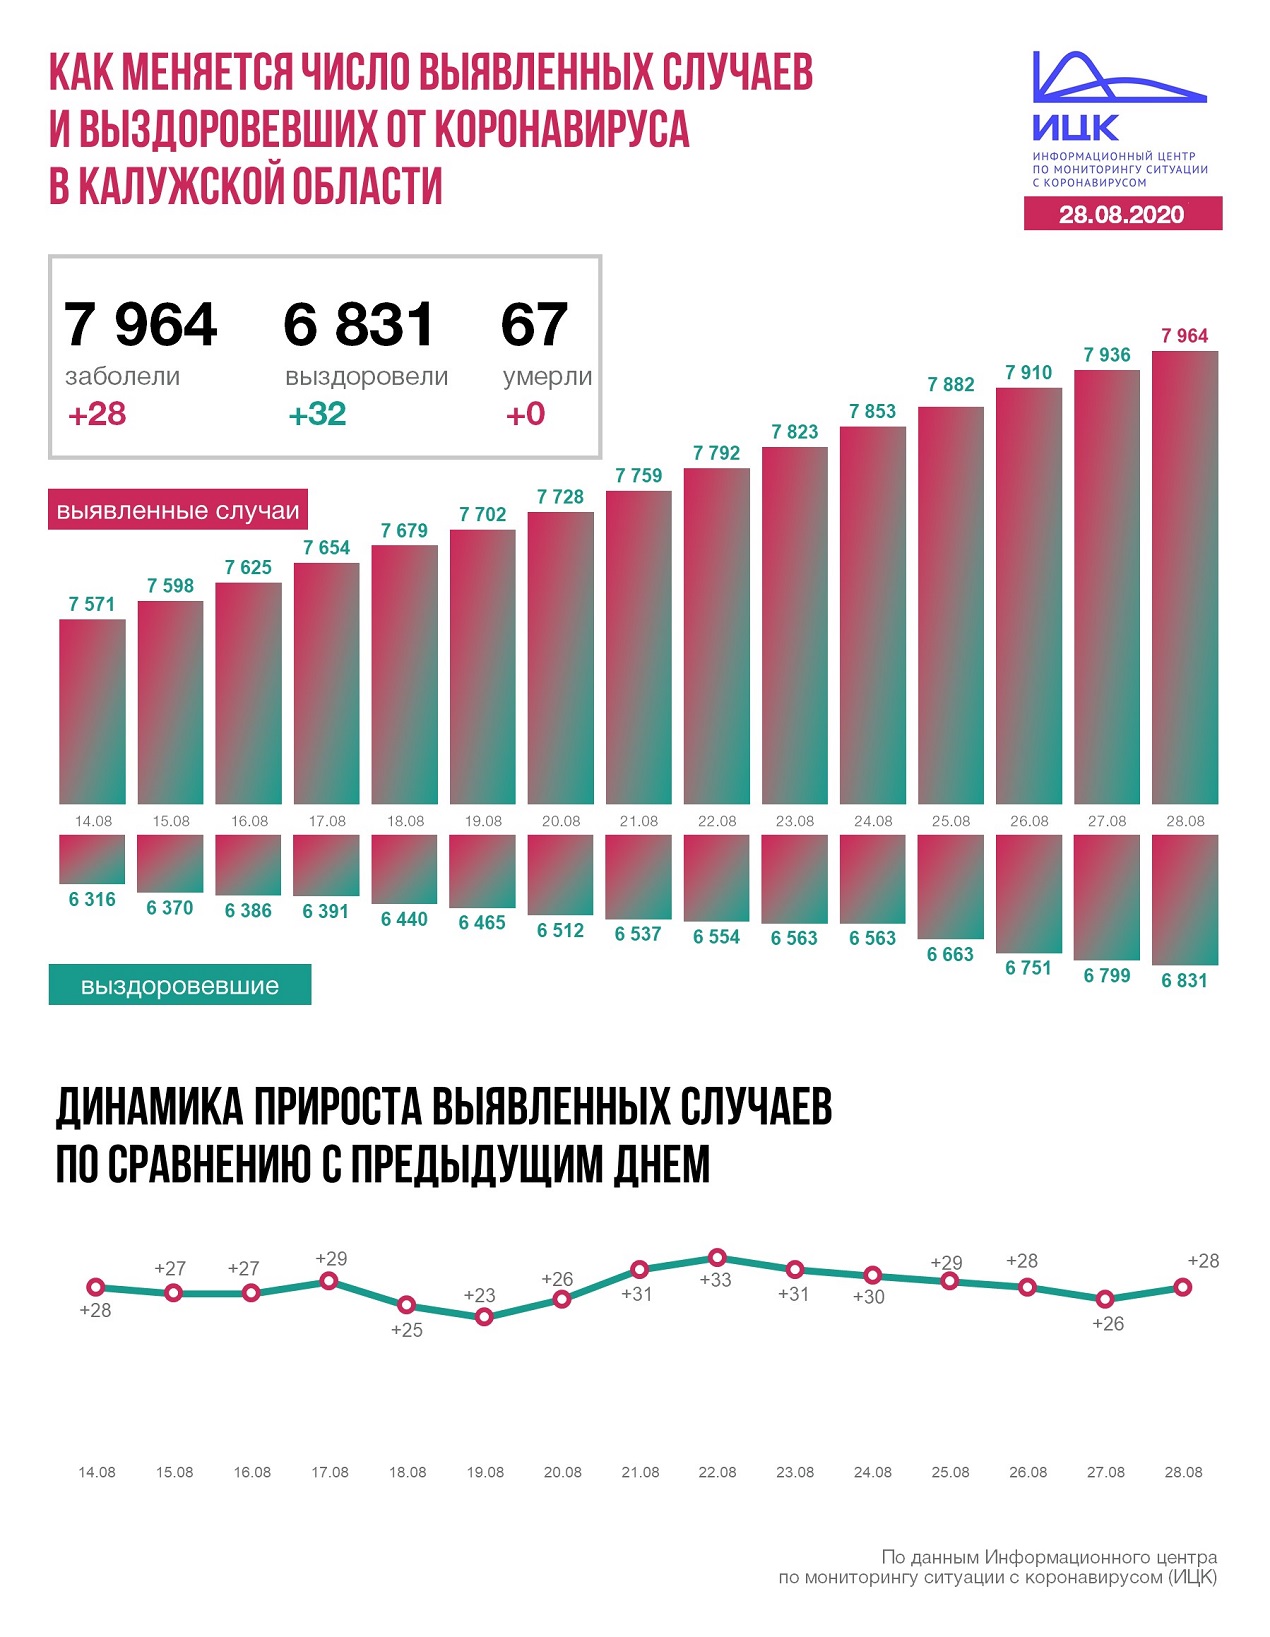 Коронавирус в Калужской области официальные данные на 28 августа 2020 года